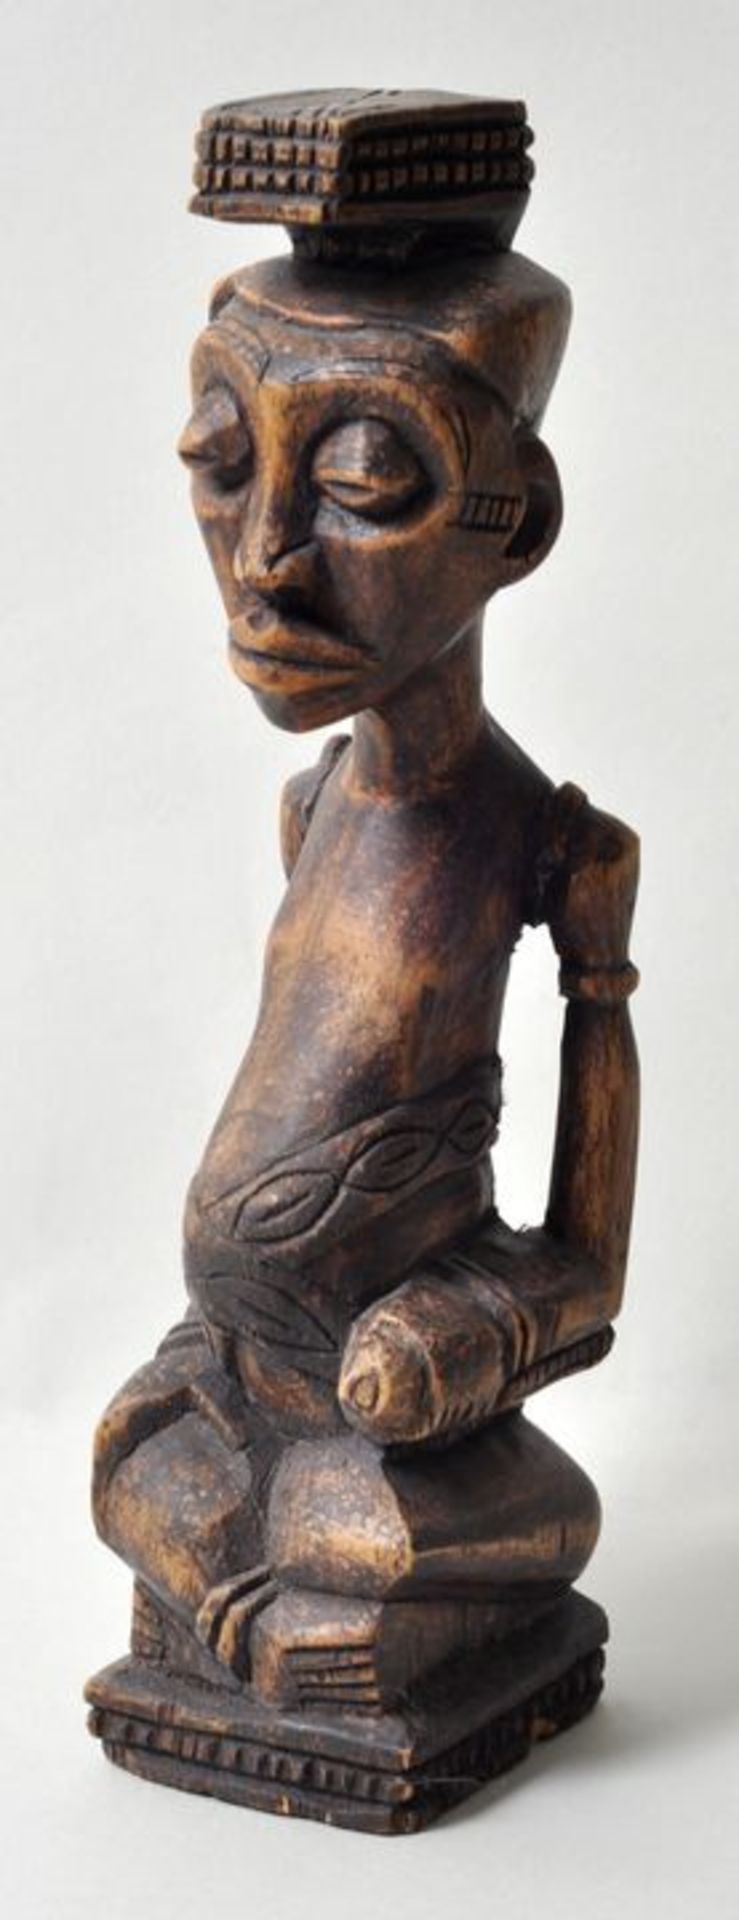 Figur Holz / figure, wood